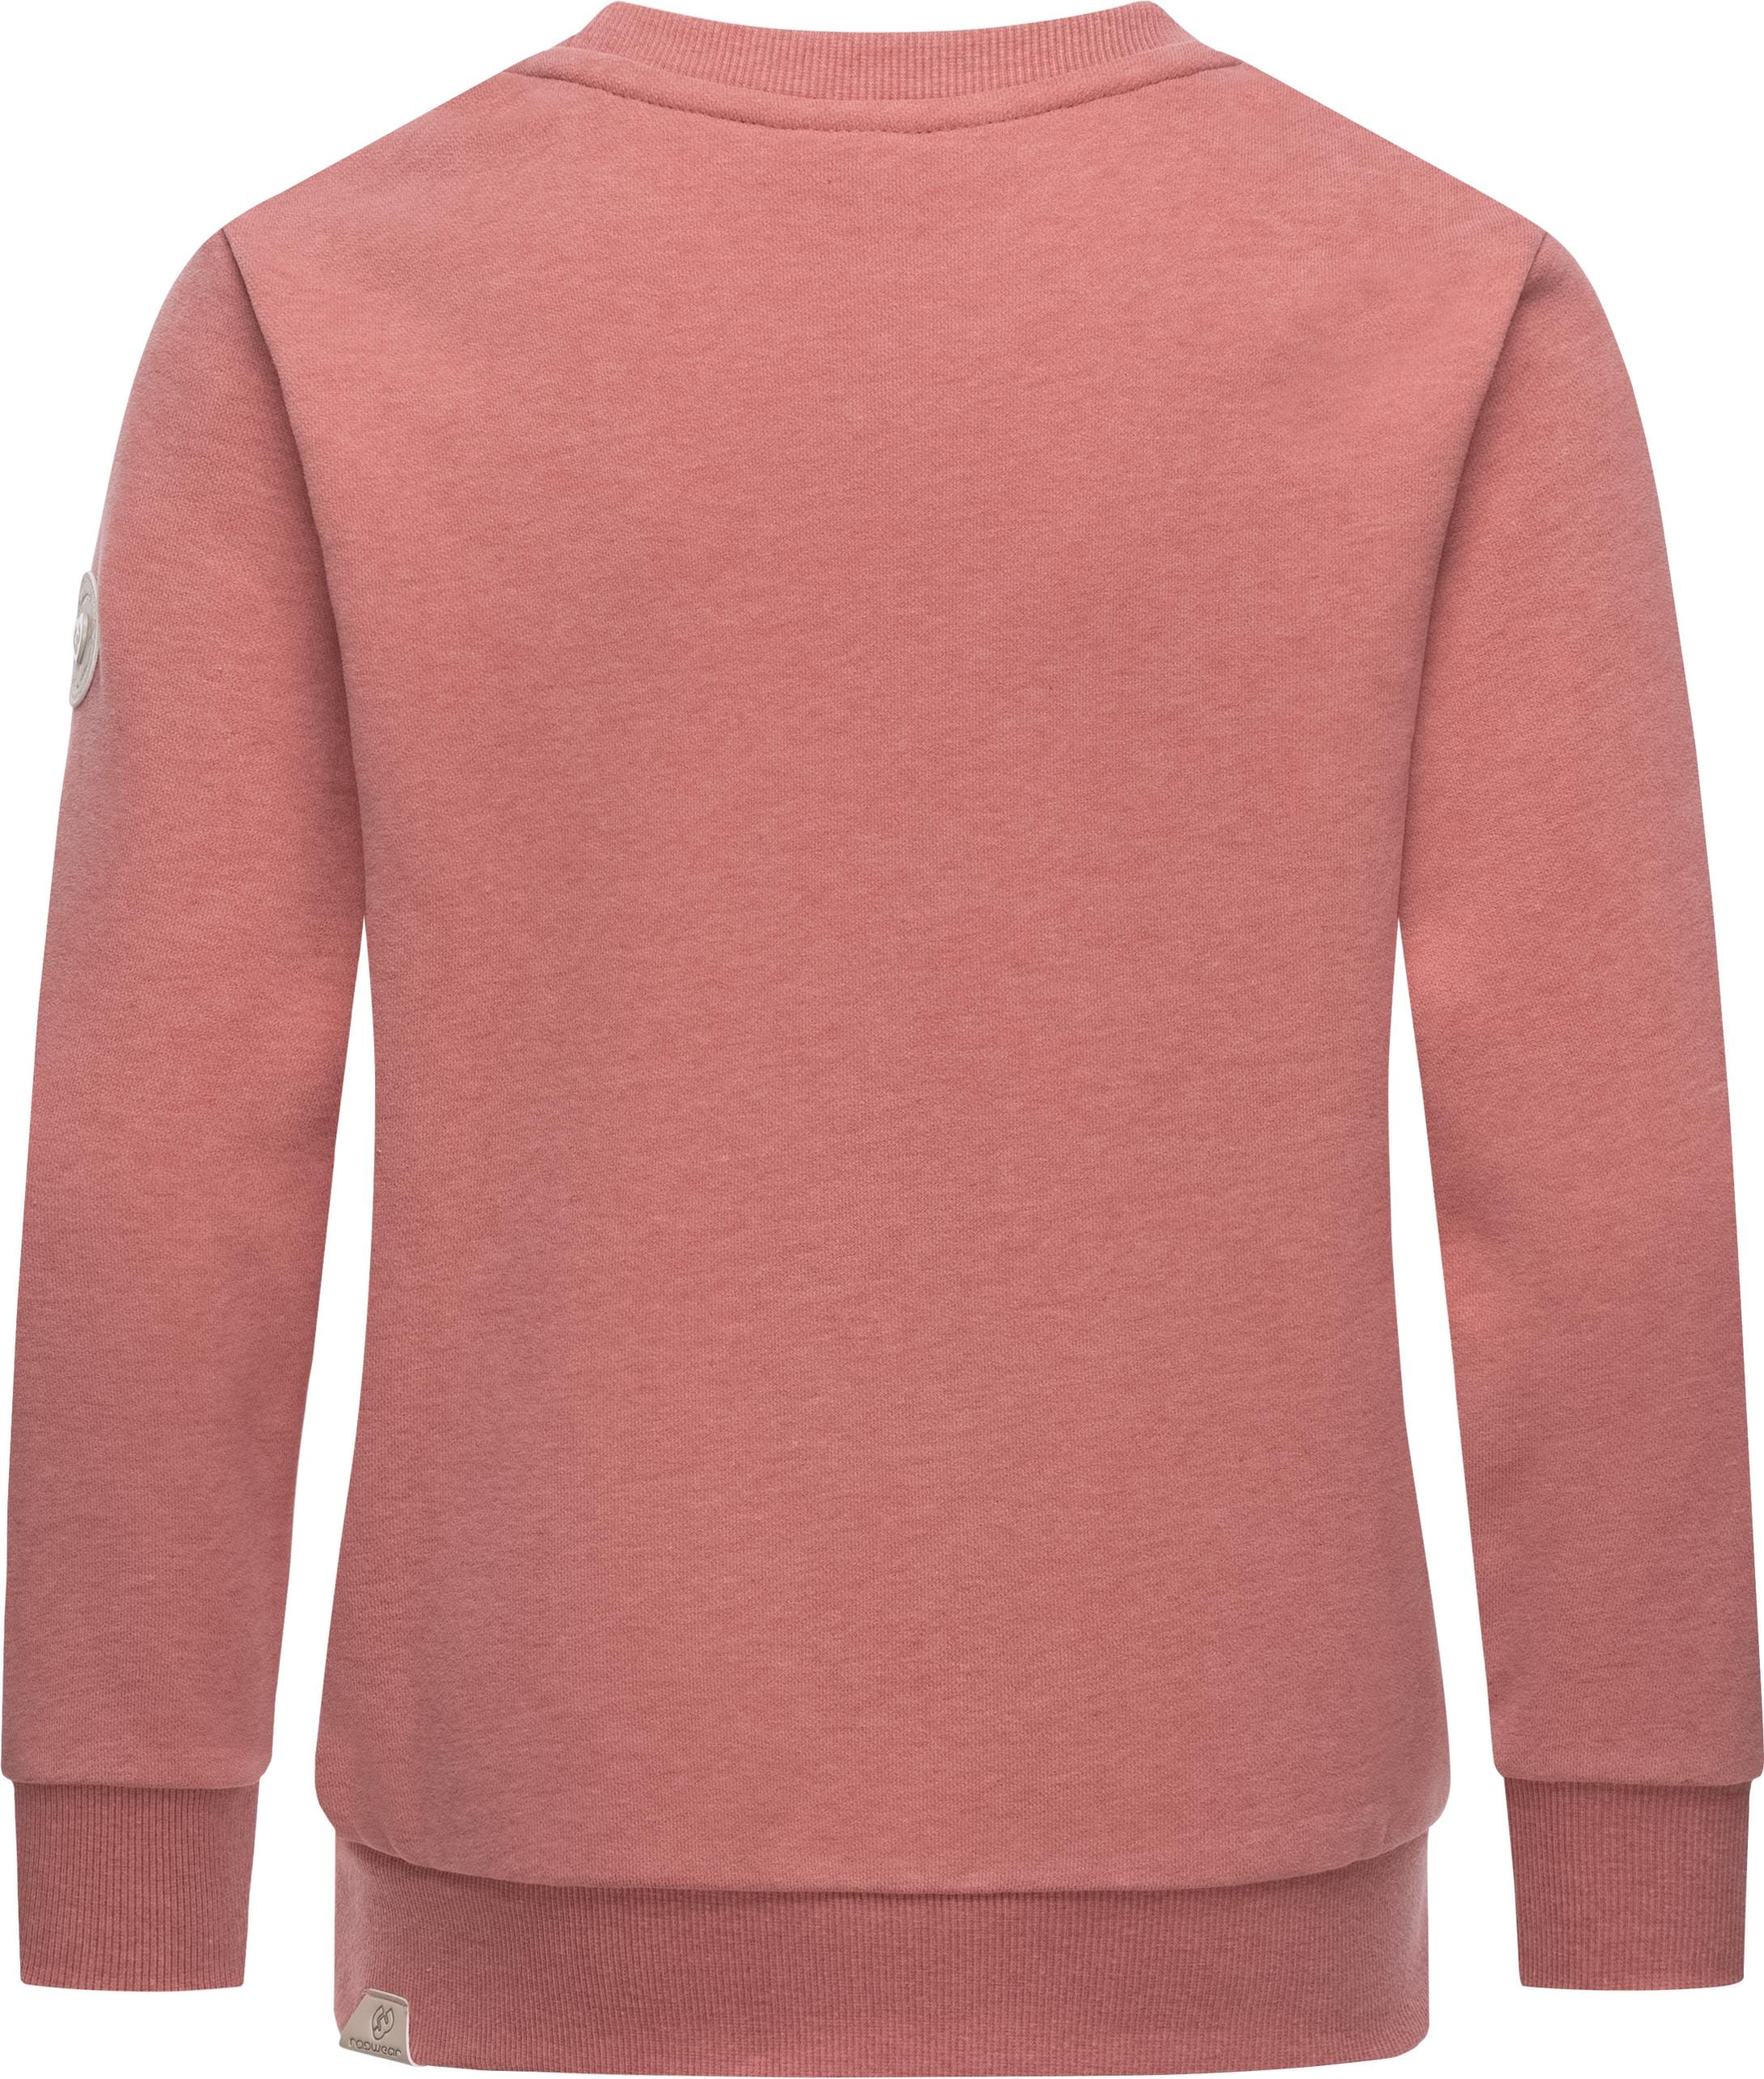 Logo Print »Evka BAUR Sweater mit kaufen Print«, stylisches Ragwear Mädchen | online coolem Sweatshirt